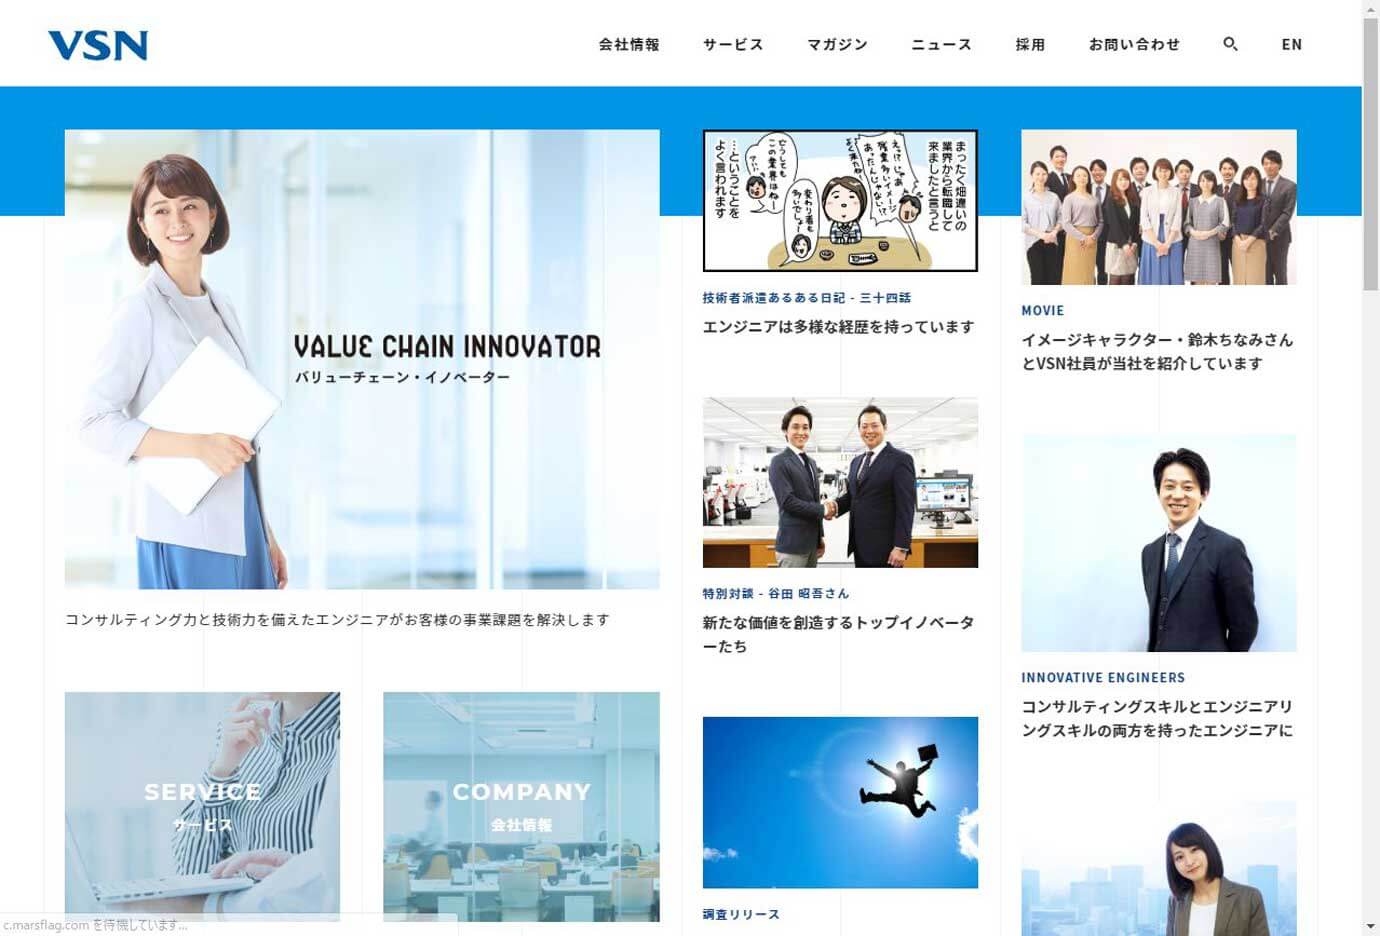 株式会社VSNのウェブページです。